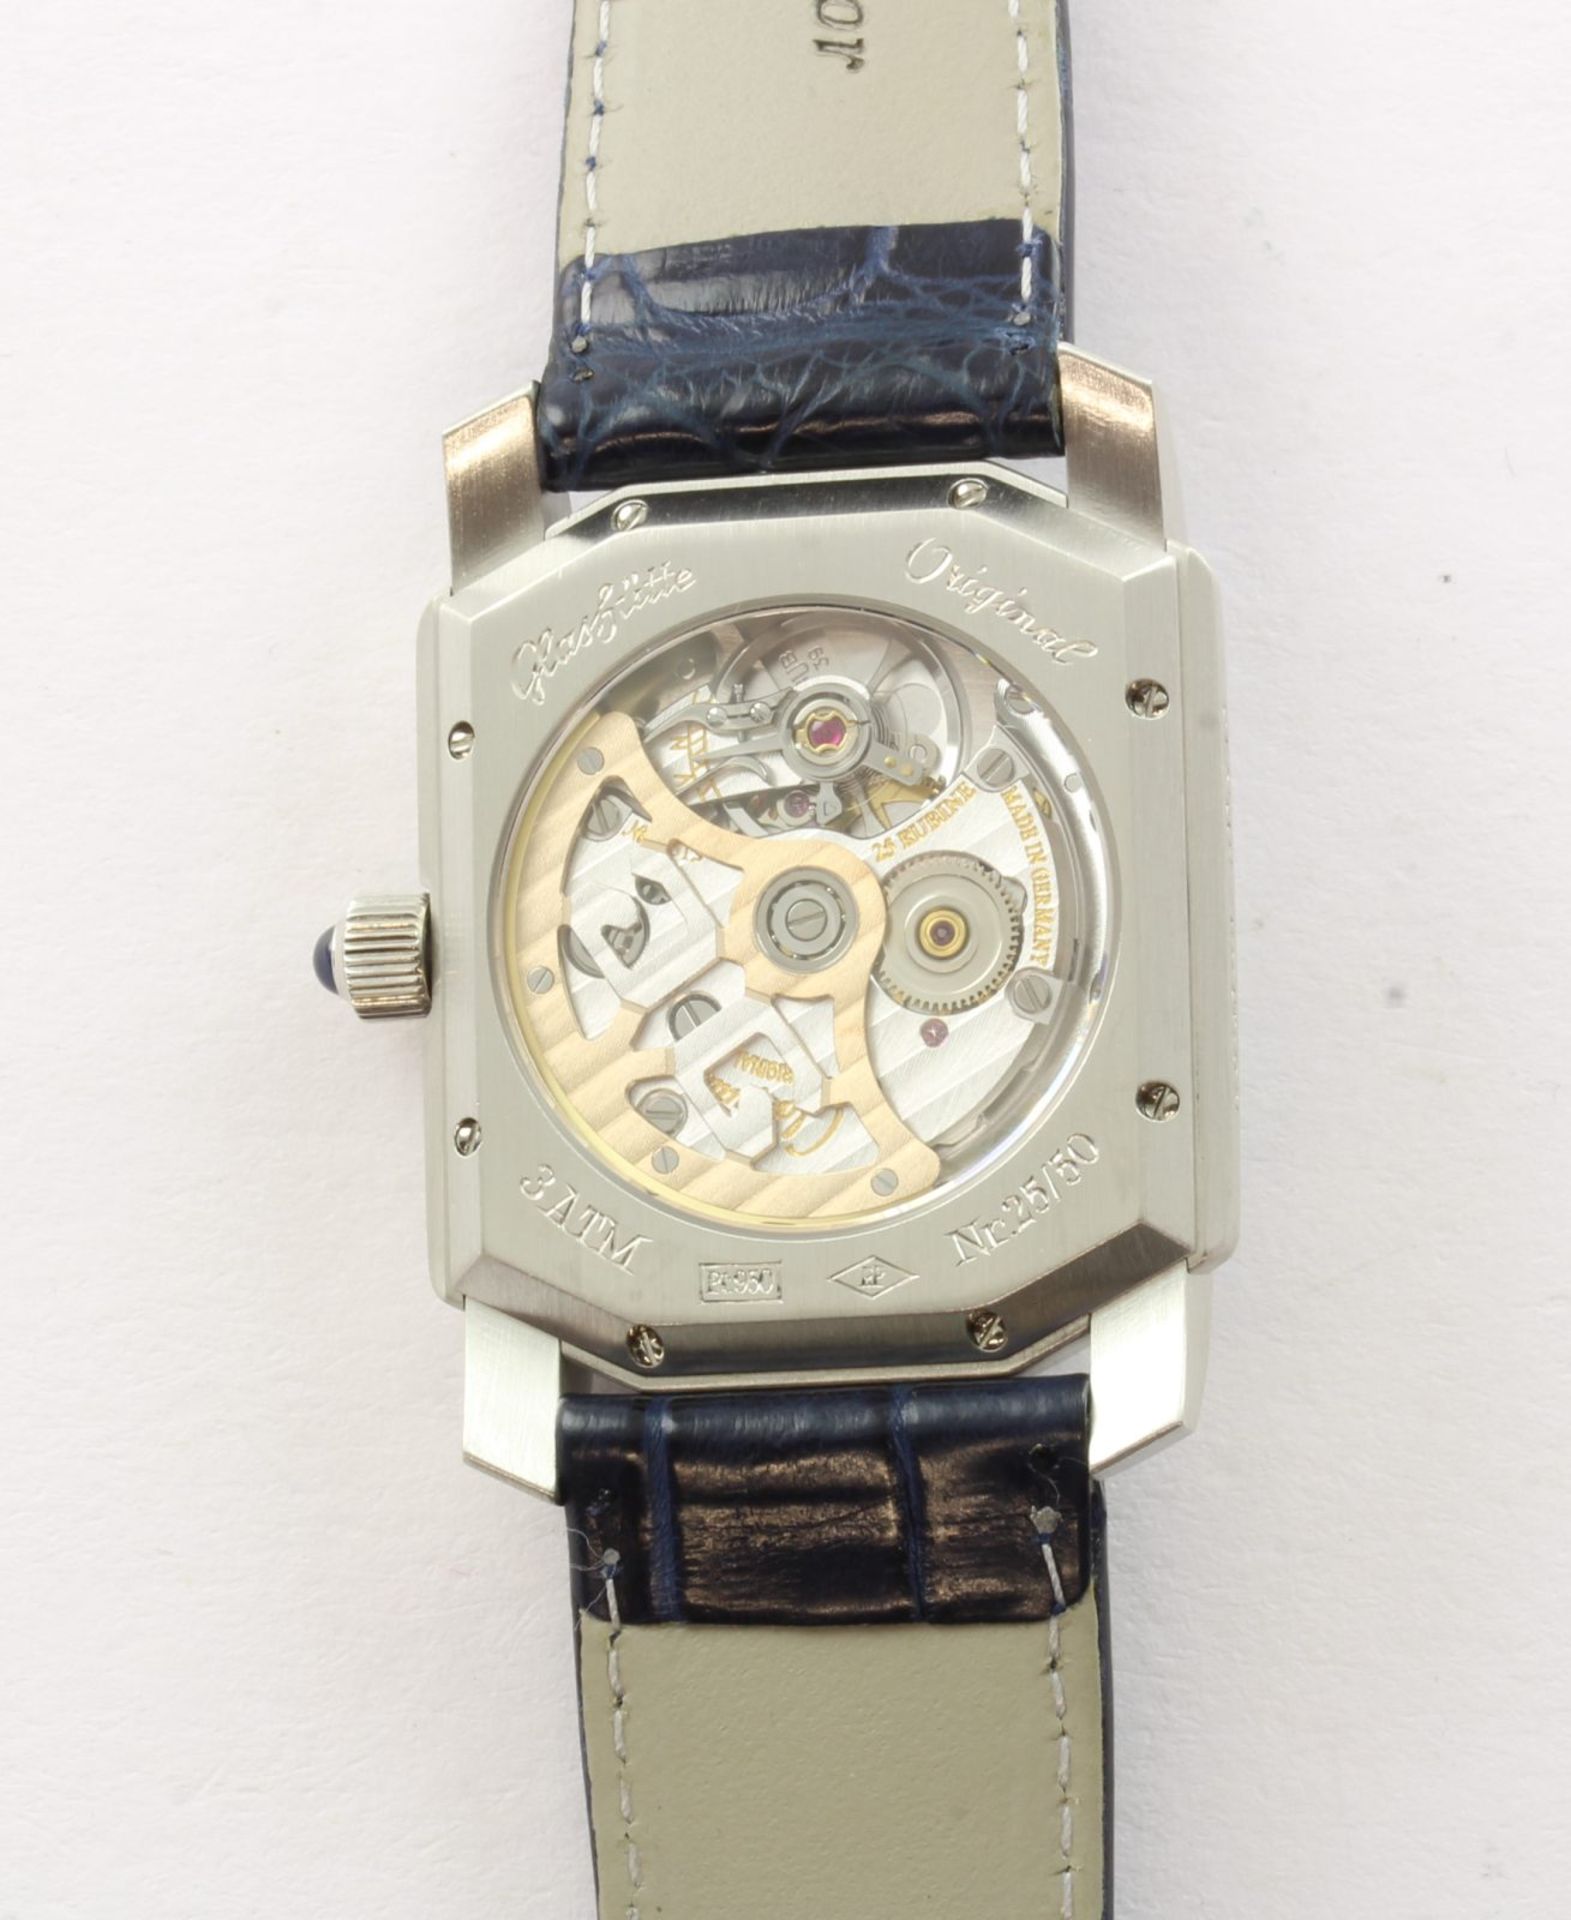 Armbanduhr, Platin, Marke: Glashütte, "Lady Karree", Automatik, Echtheitszertifikat - Bild 2 aus 3